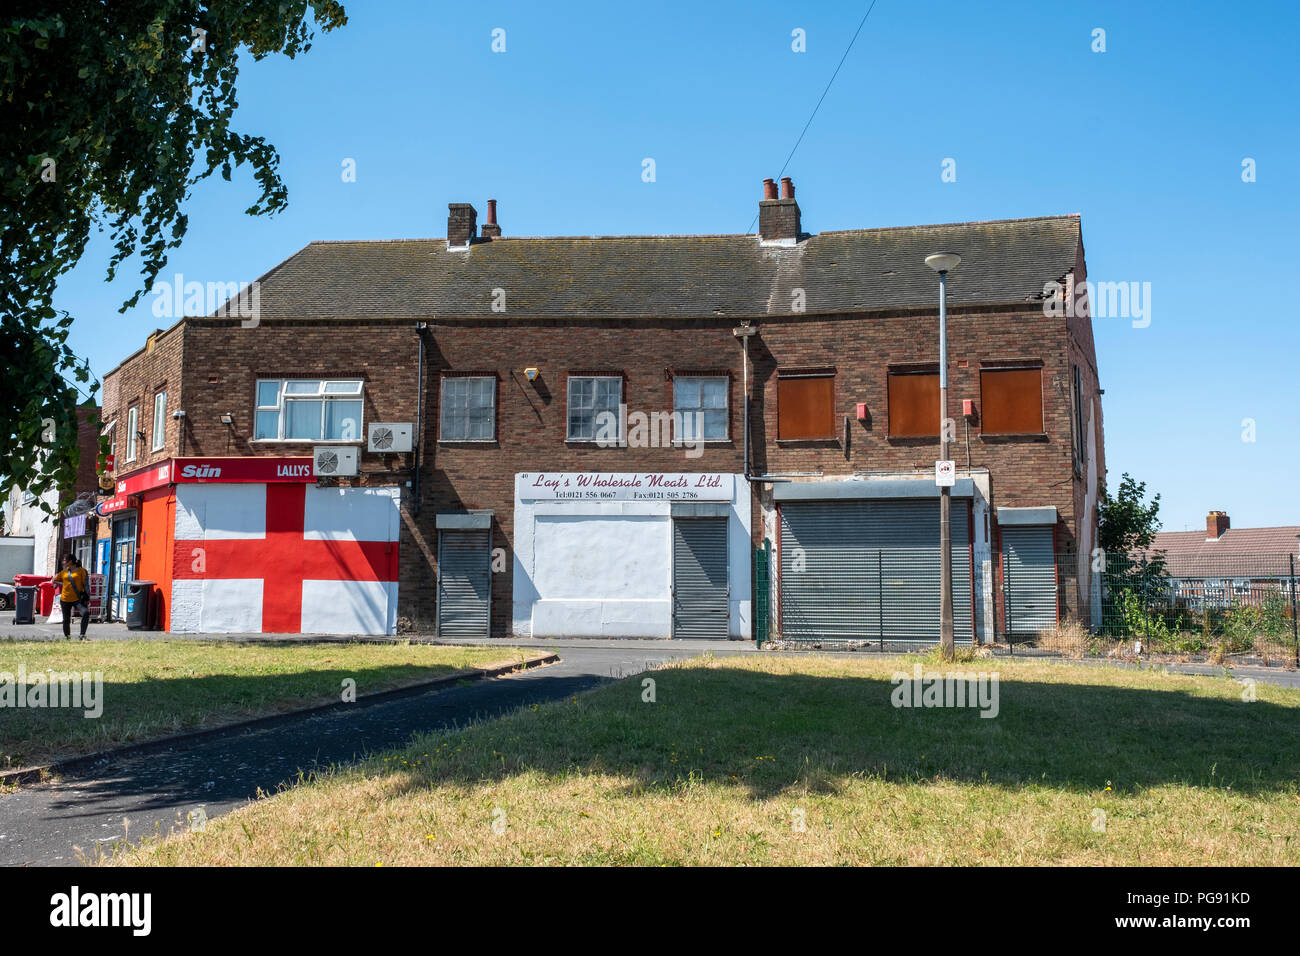 San Giorgio a bandiera dipinta sulla parete della scatola negozi immobiliari, Roma Anagnina, West Midlands. Foto Stock